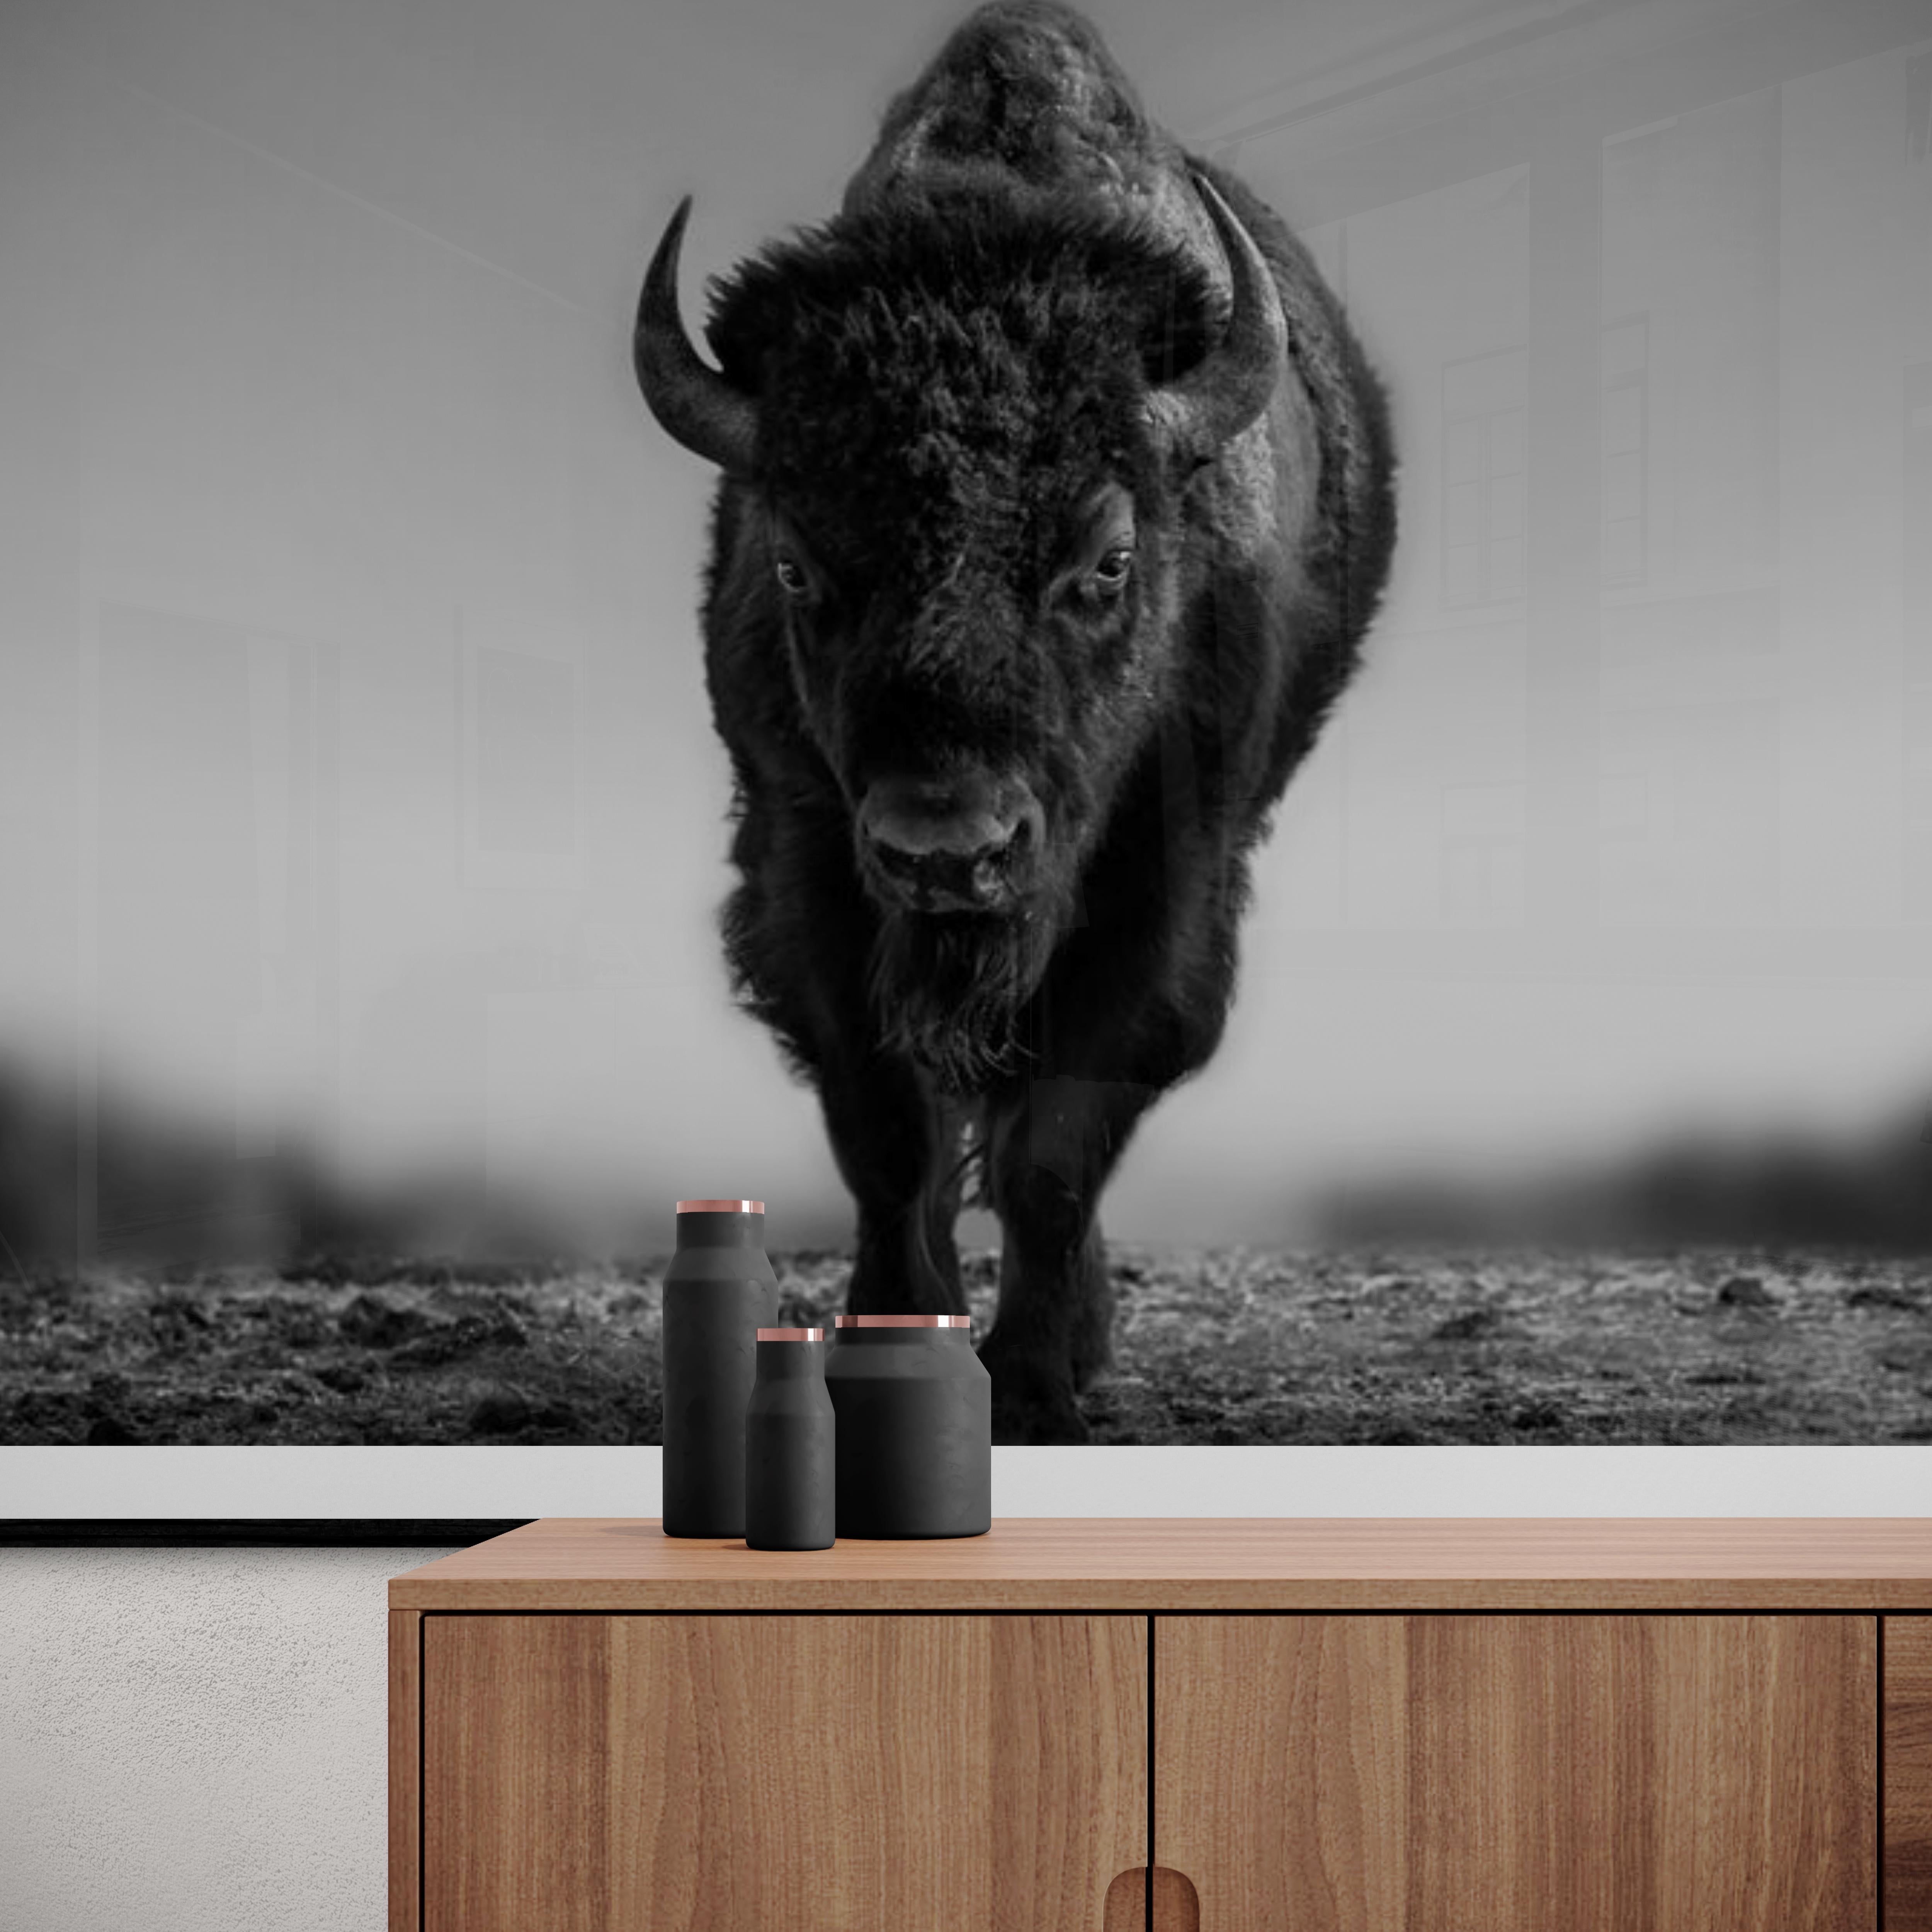  « La bête » 24x36 - Photographie en noir et blanc de Bison, Buffalo Western Art - Print de Shane Russeck